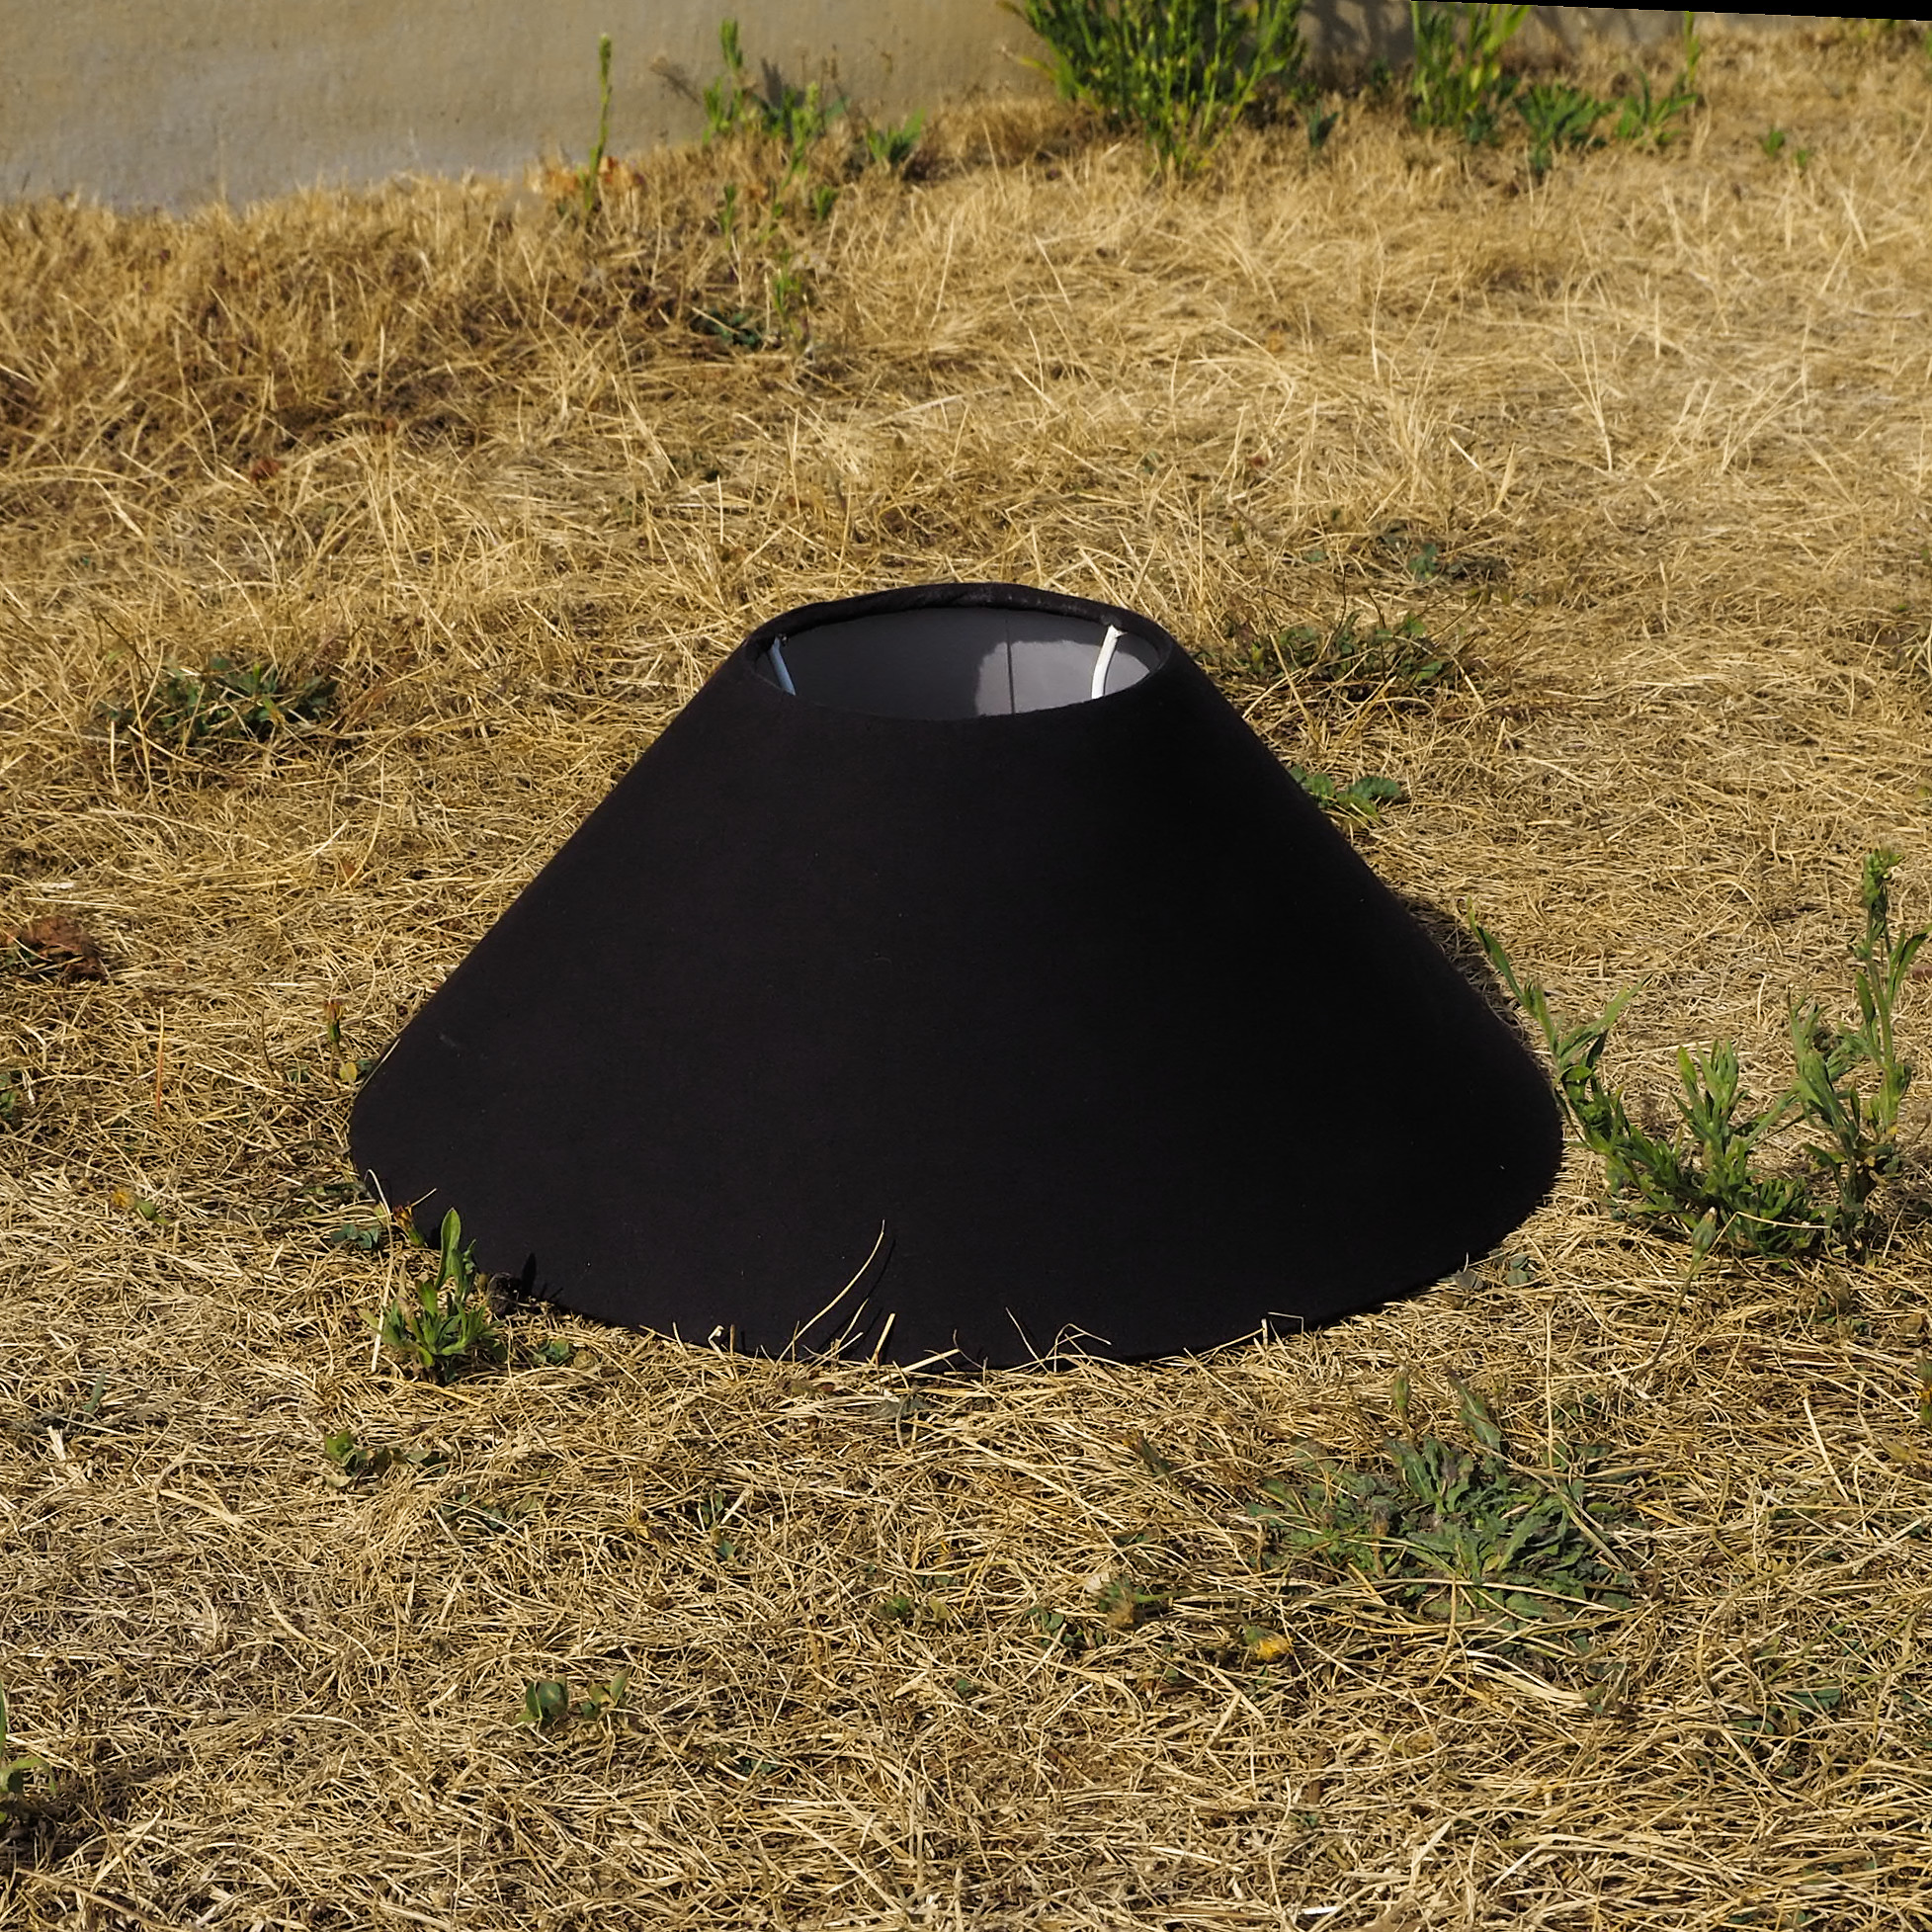 Medium cone lampshade - Black